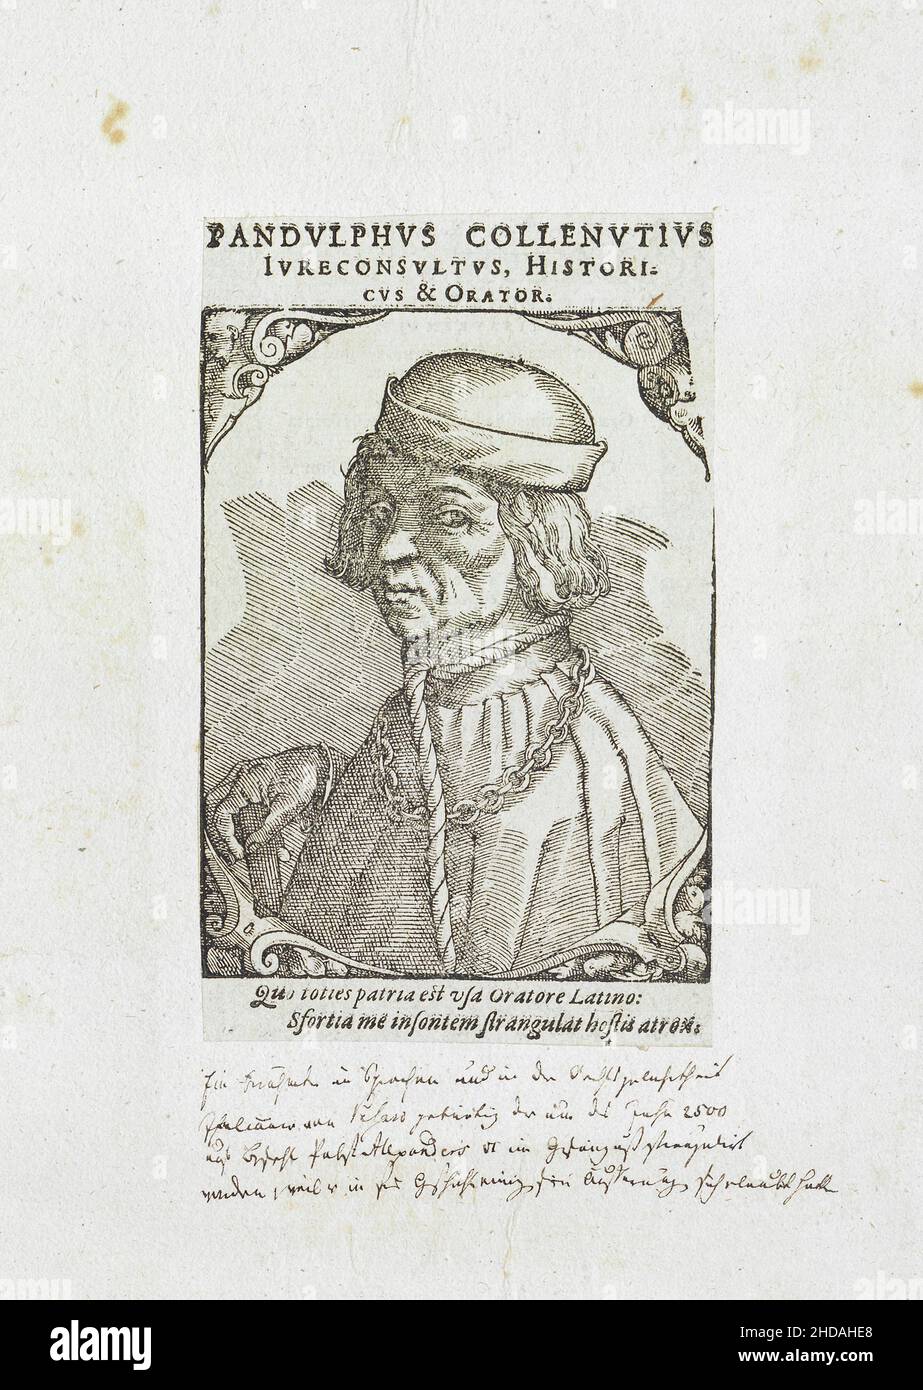 Gravurportrait von Pandolfo Collenuccio. 1589 Pandolfo Collenuccio (1444 - 1504) war ein italienischer Humanist, Historiker und Jurist. Stockfoto